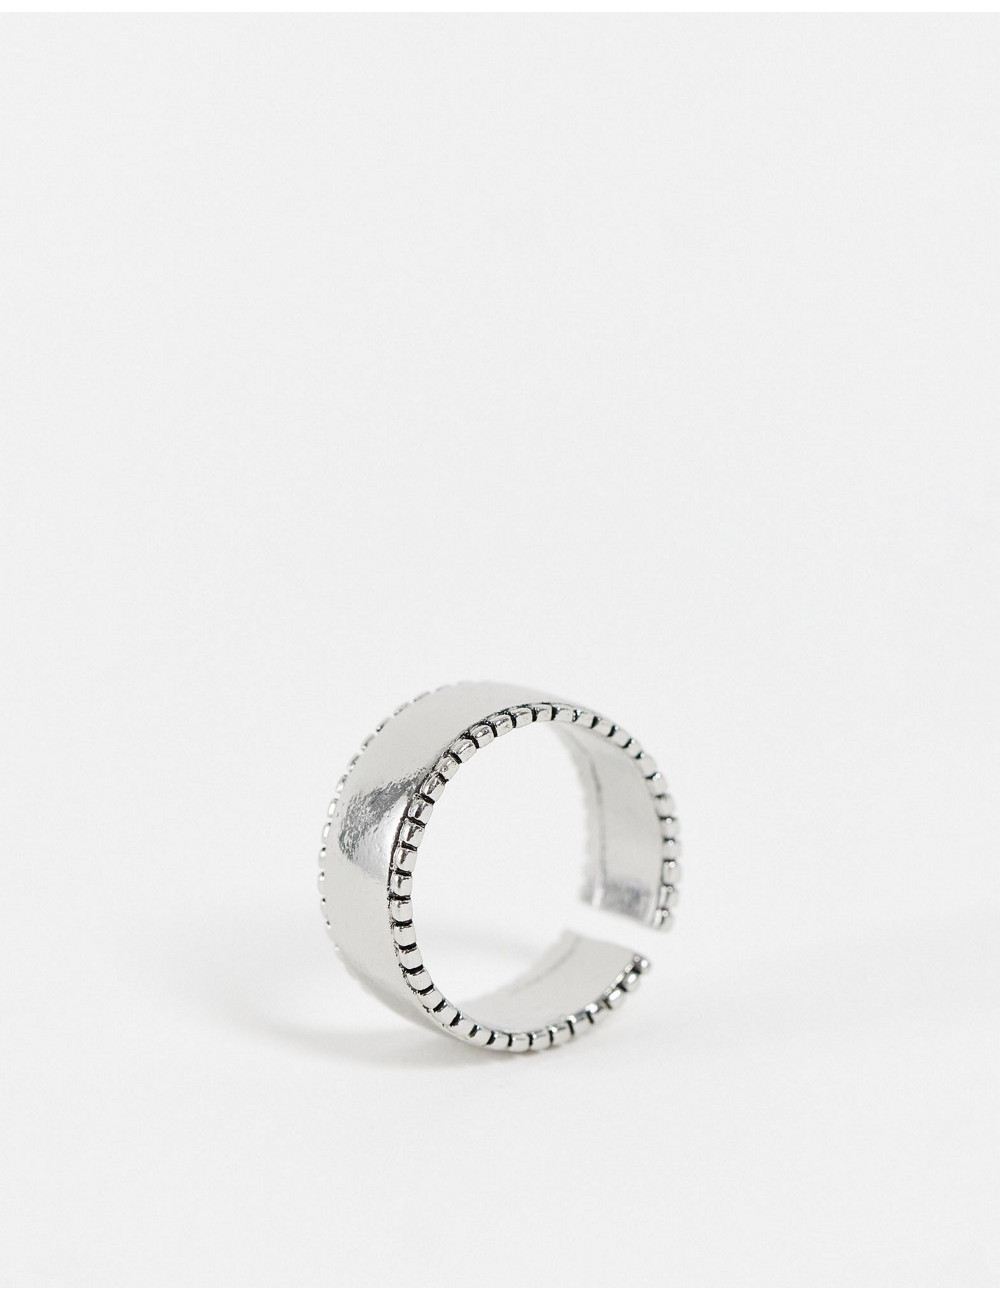 SVNX textured ring